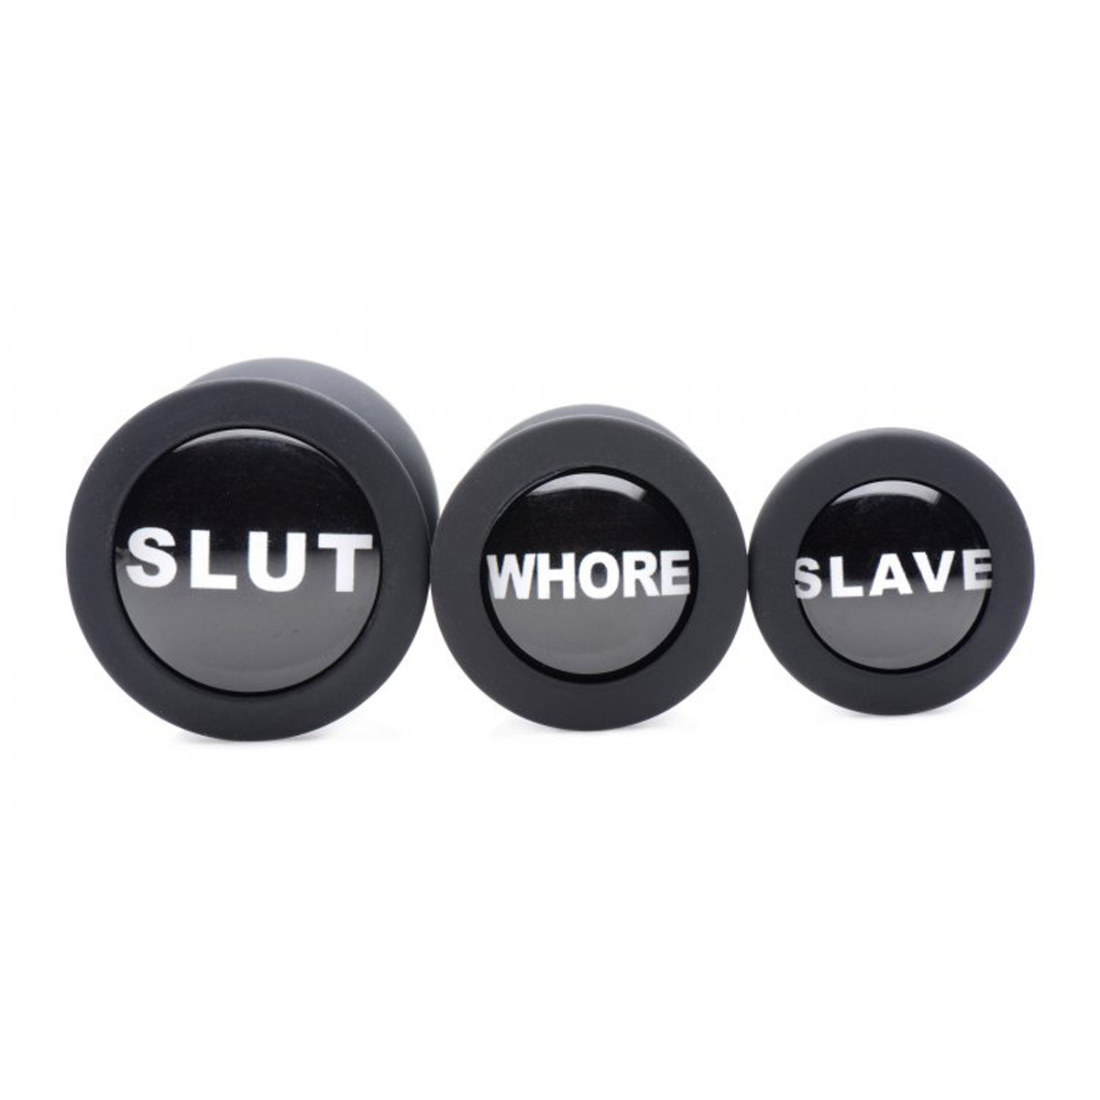 3-delige, zwarte butt plug set van Master Series. Op de onderkant van iedere butt plug staat 1 dirty word: 'Slave', 'Whore', & 'Slut'. Te koop bij Flavourez.